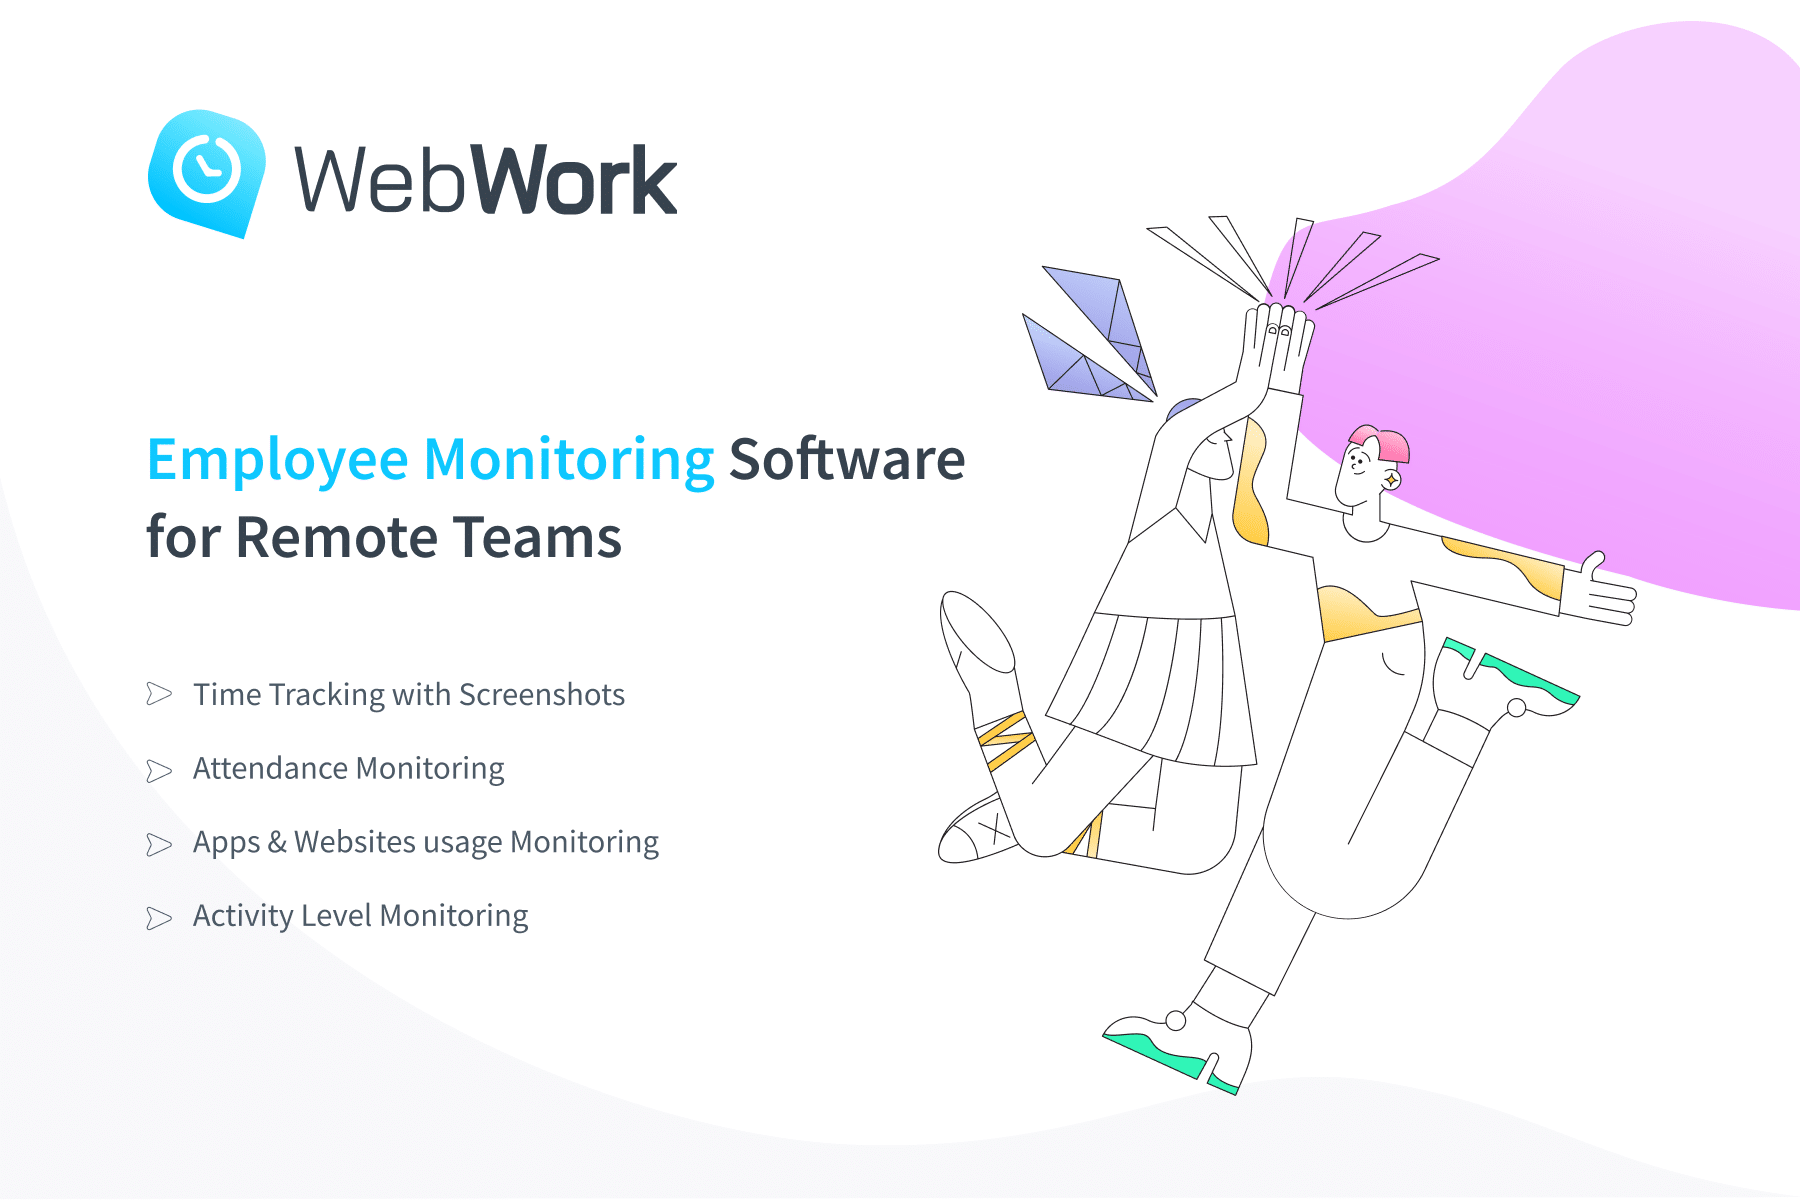 WebWork Employee Monitoring Software